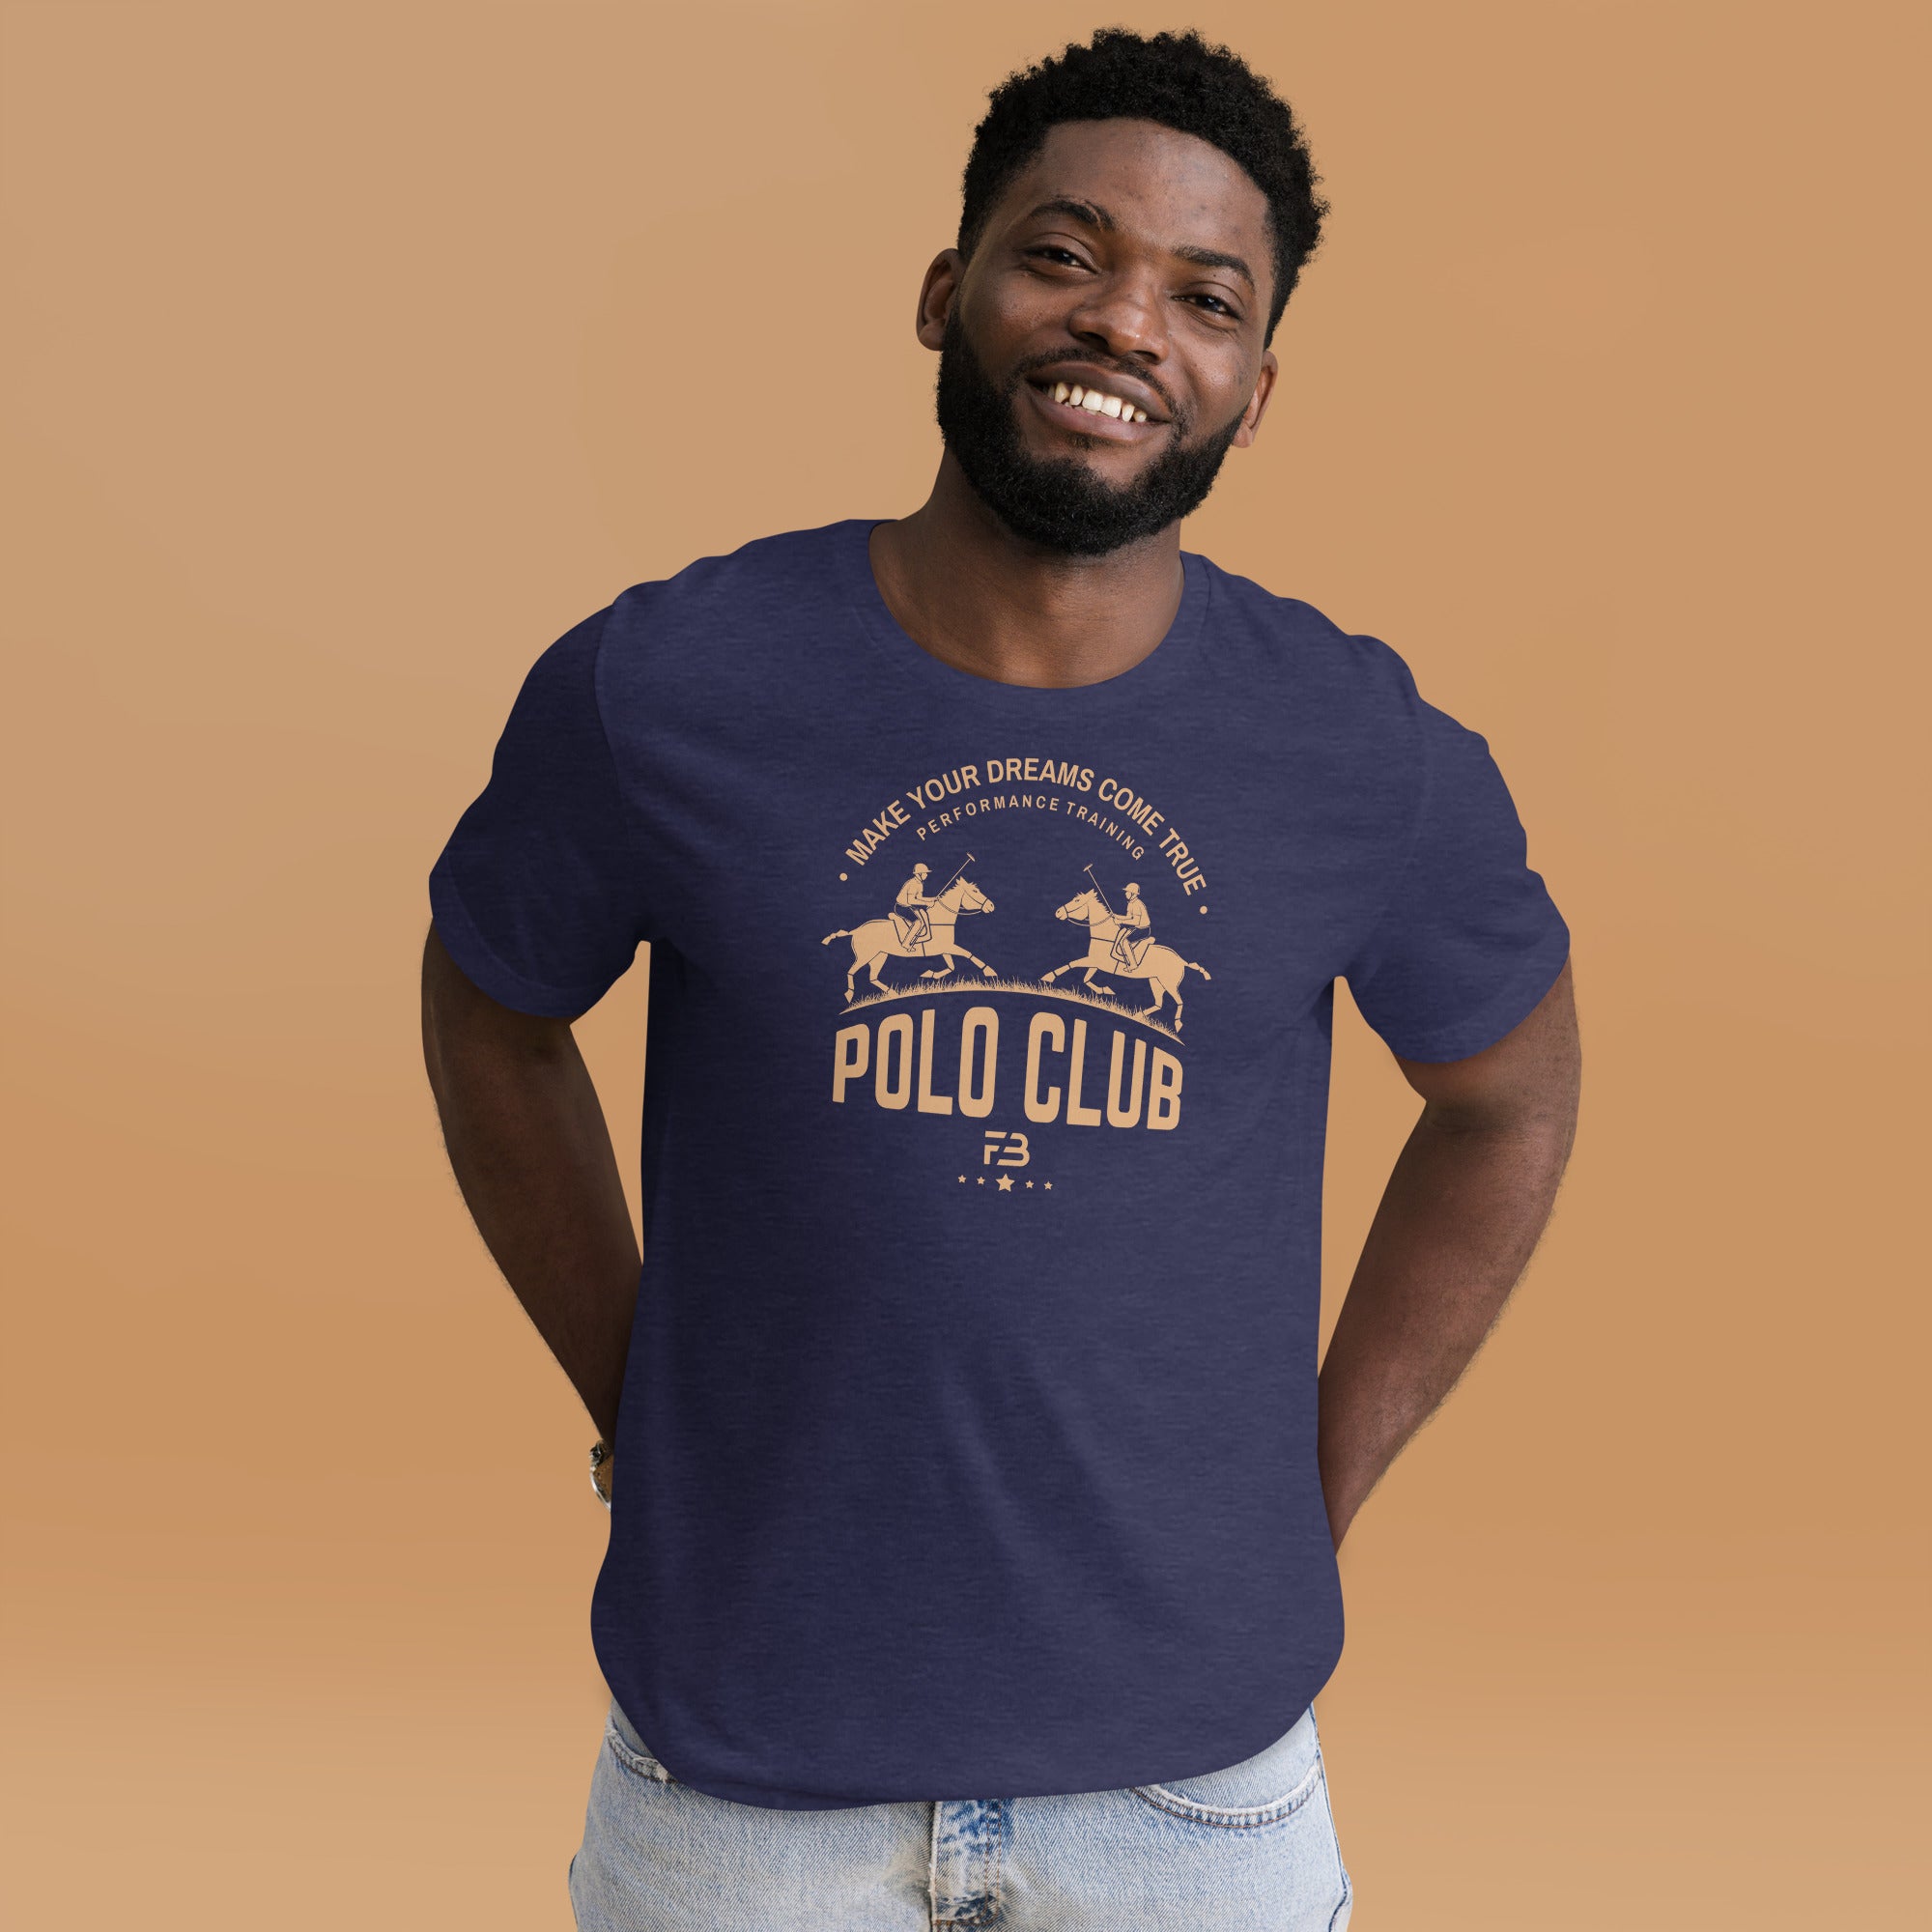 Polo Club FB T-shirt - FashionBox